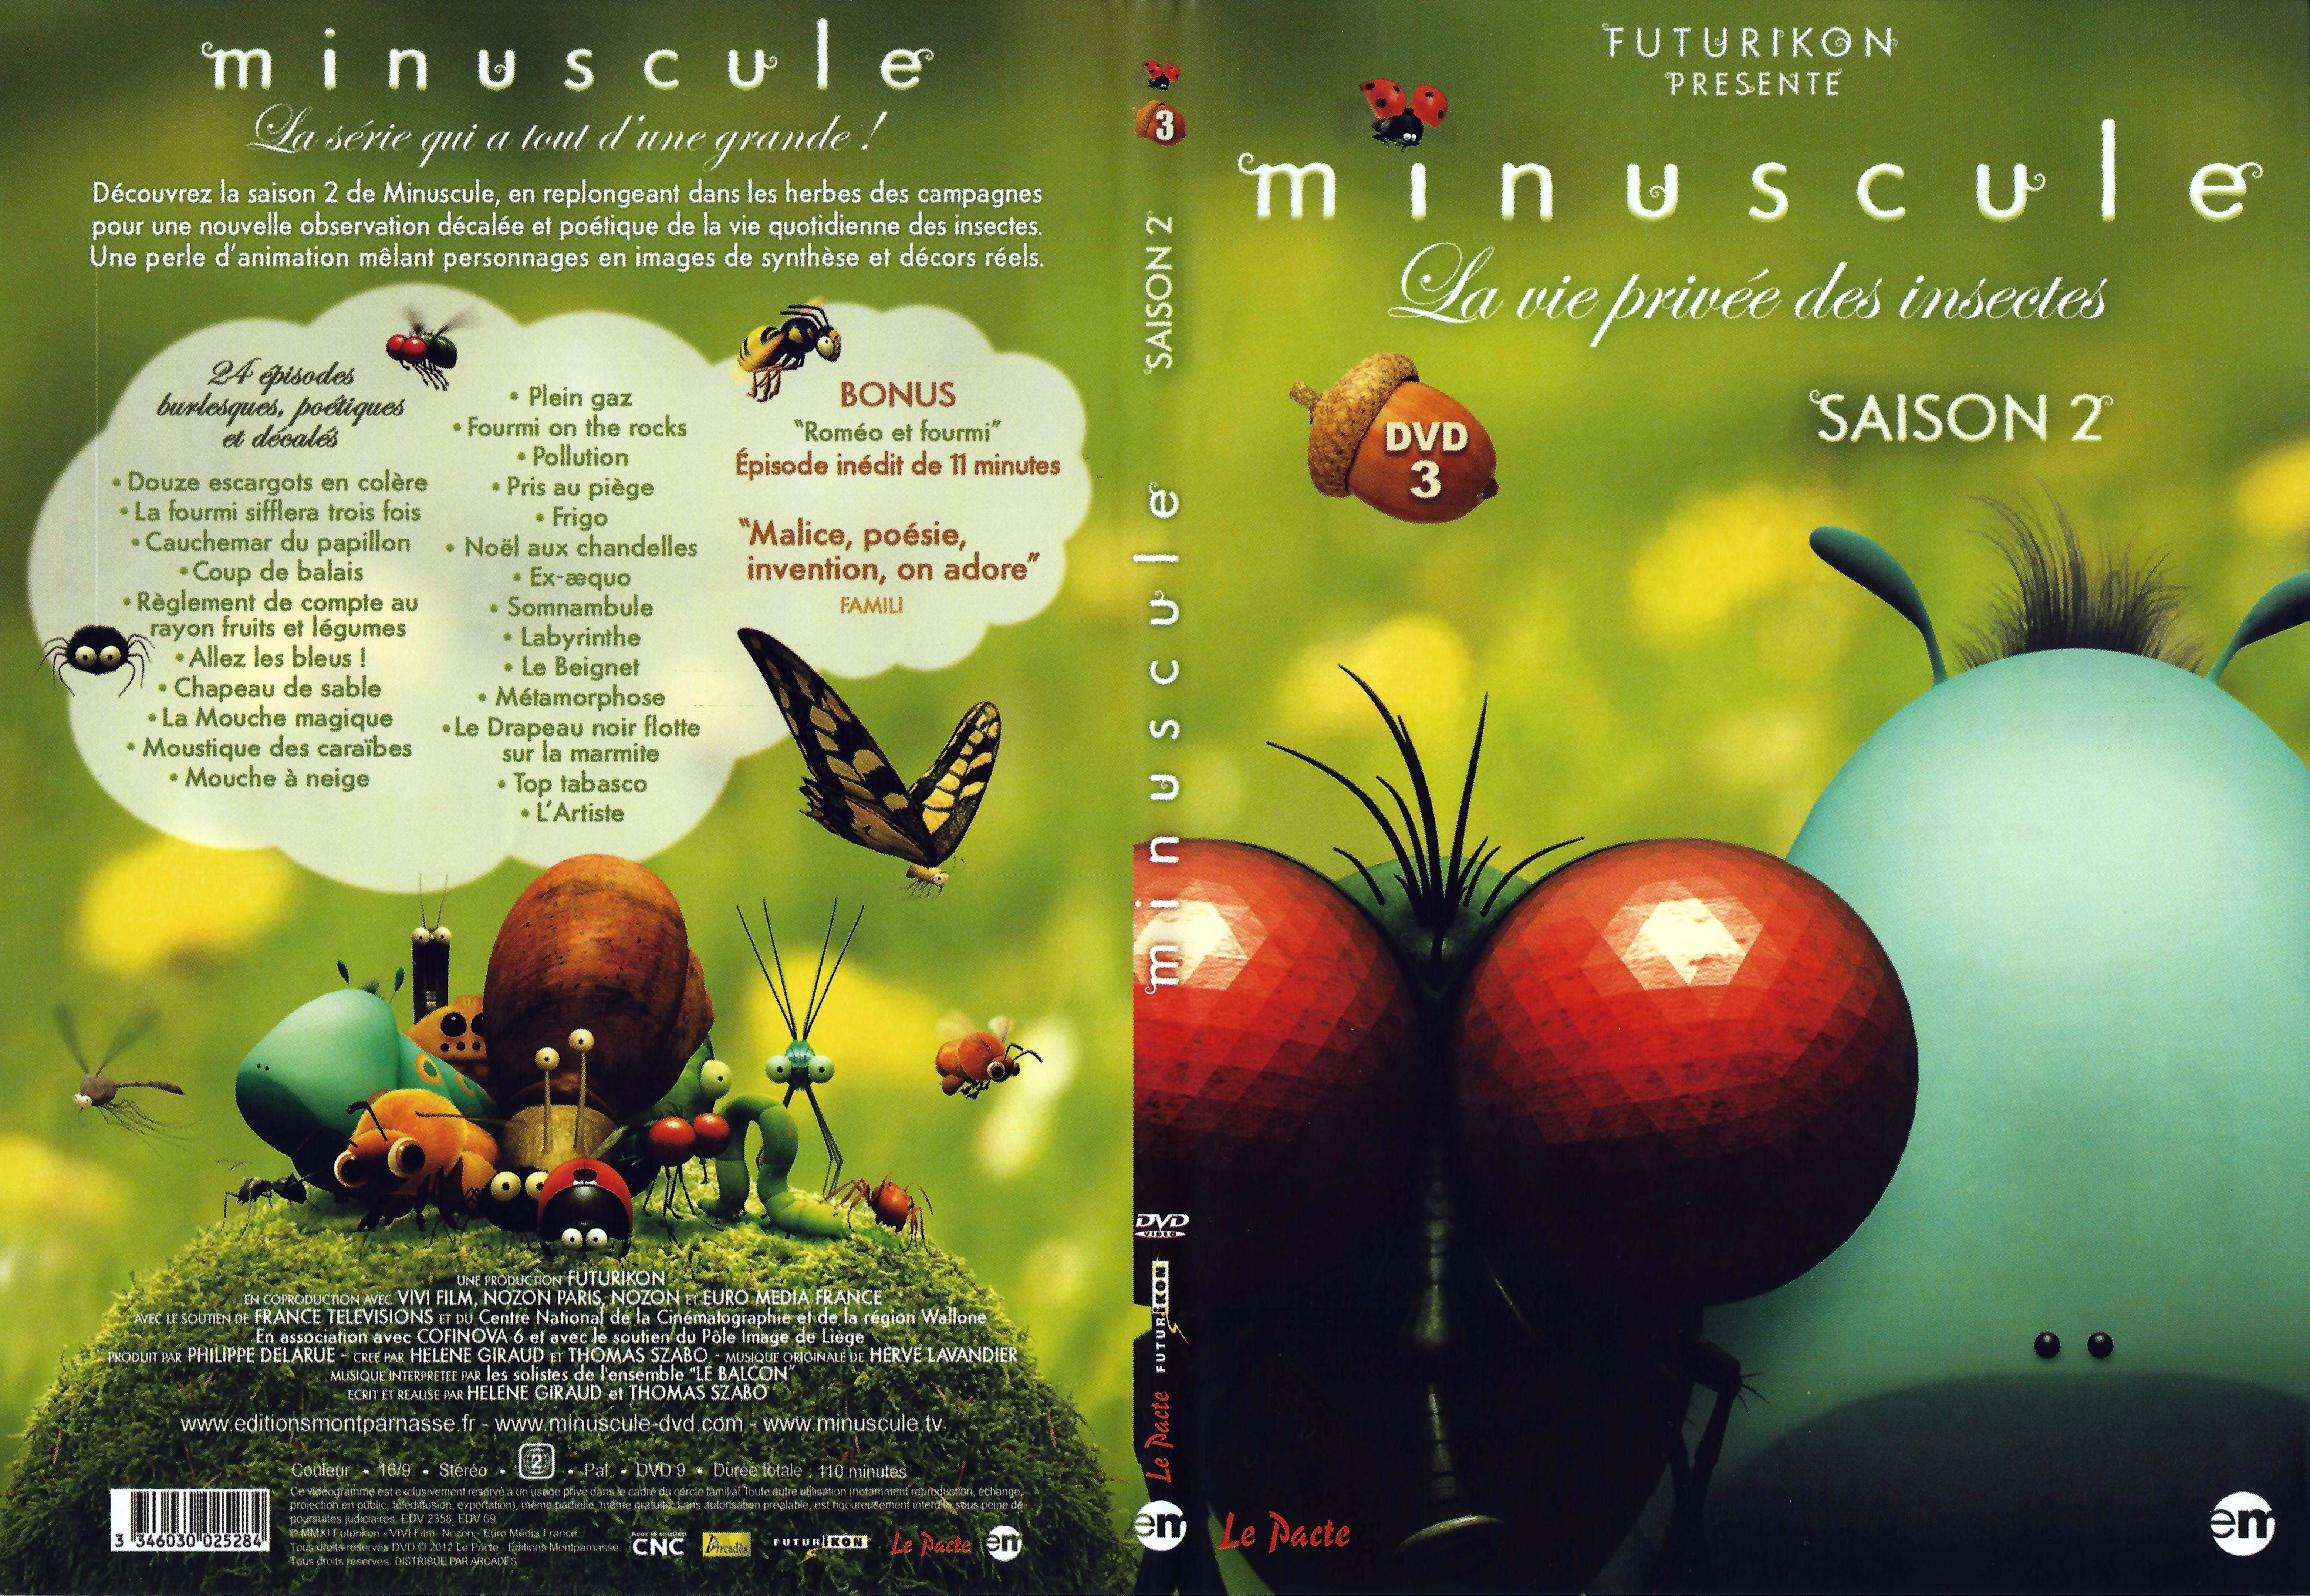 Jaquette DVD Minuscule Saison 2 DVD 3